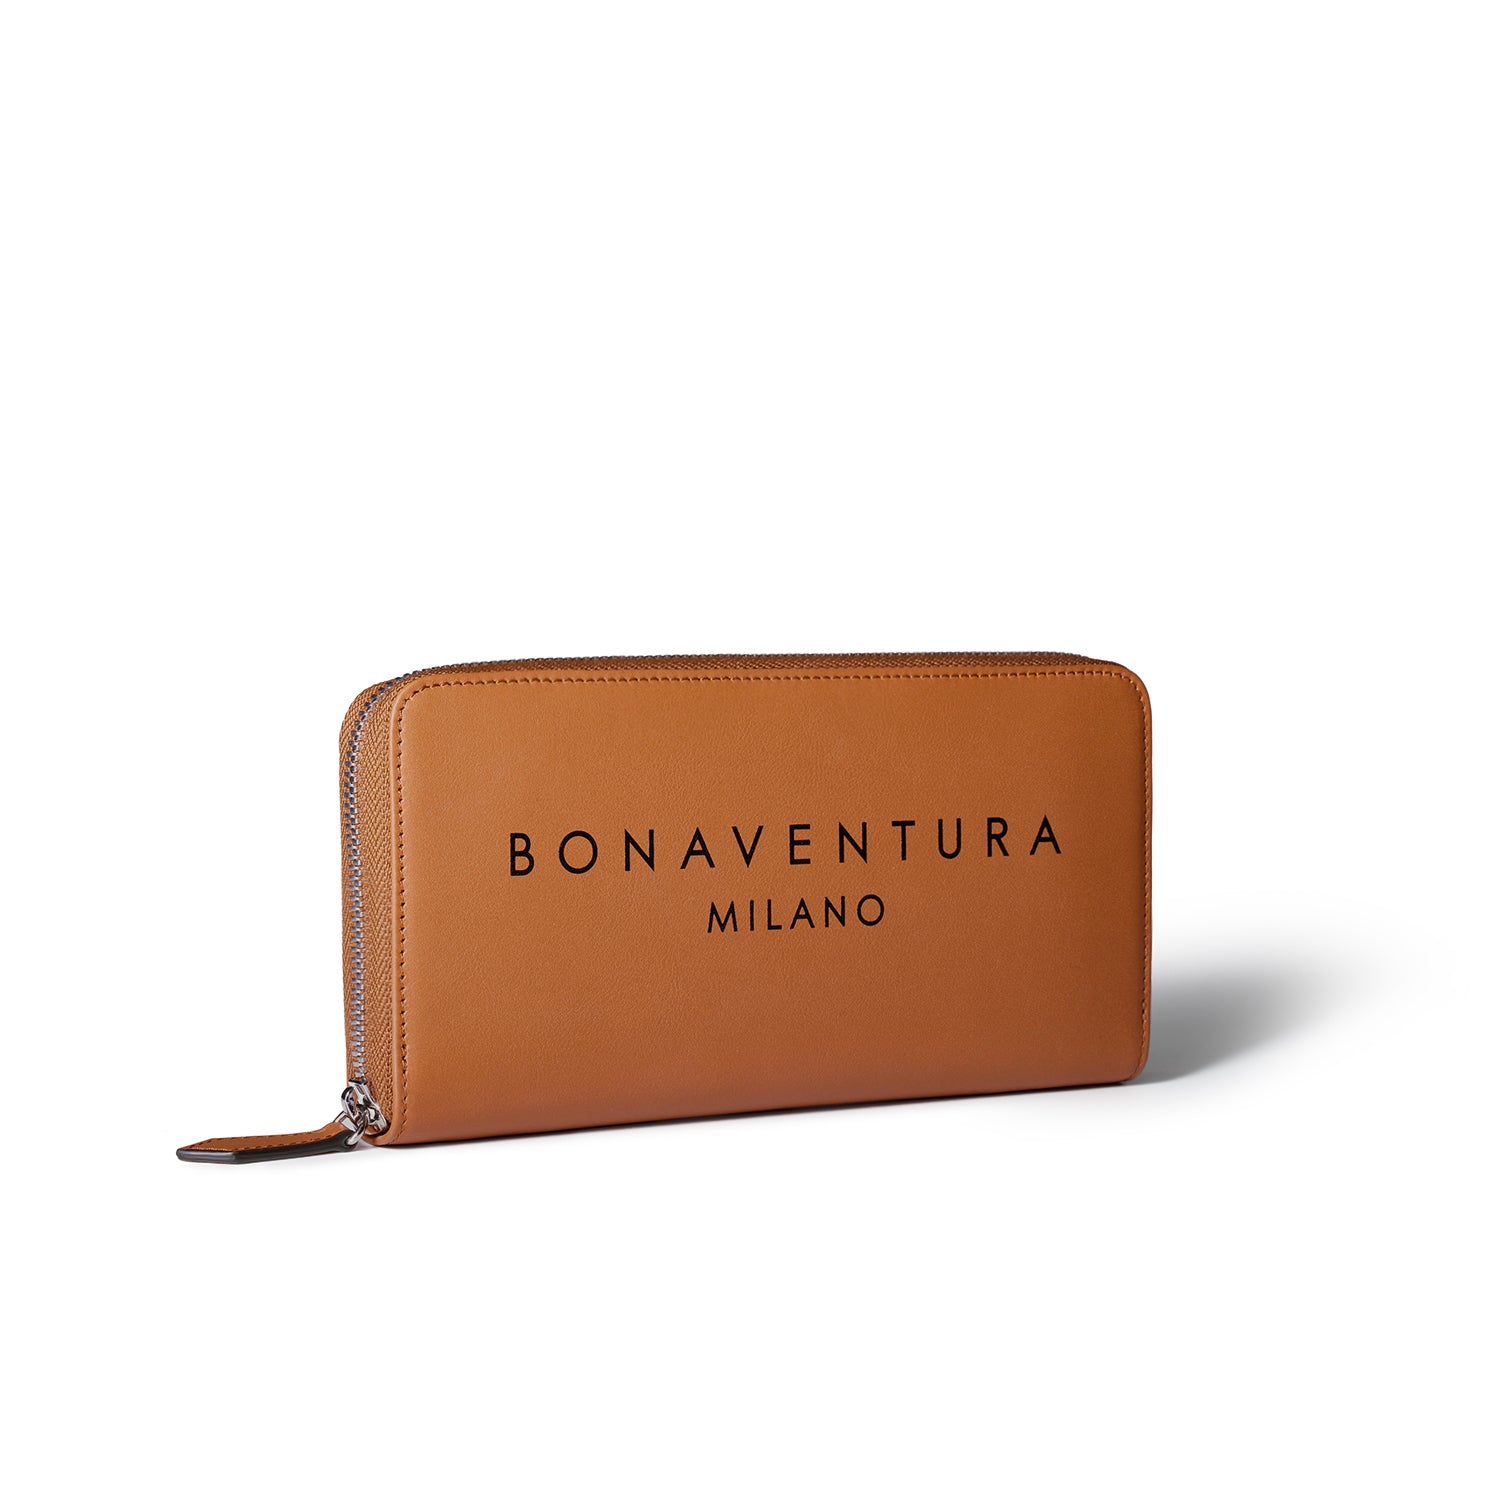 上質なレザーのレディース財布 – イタリア(ミラノ)発の高級革製品の